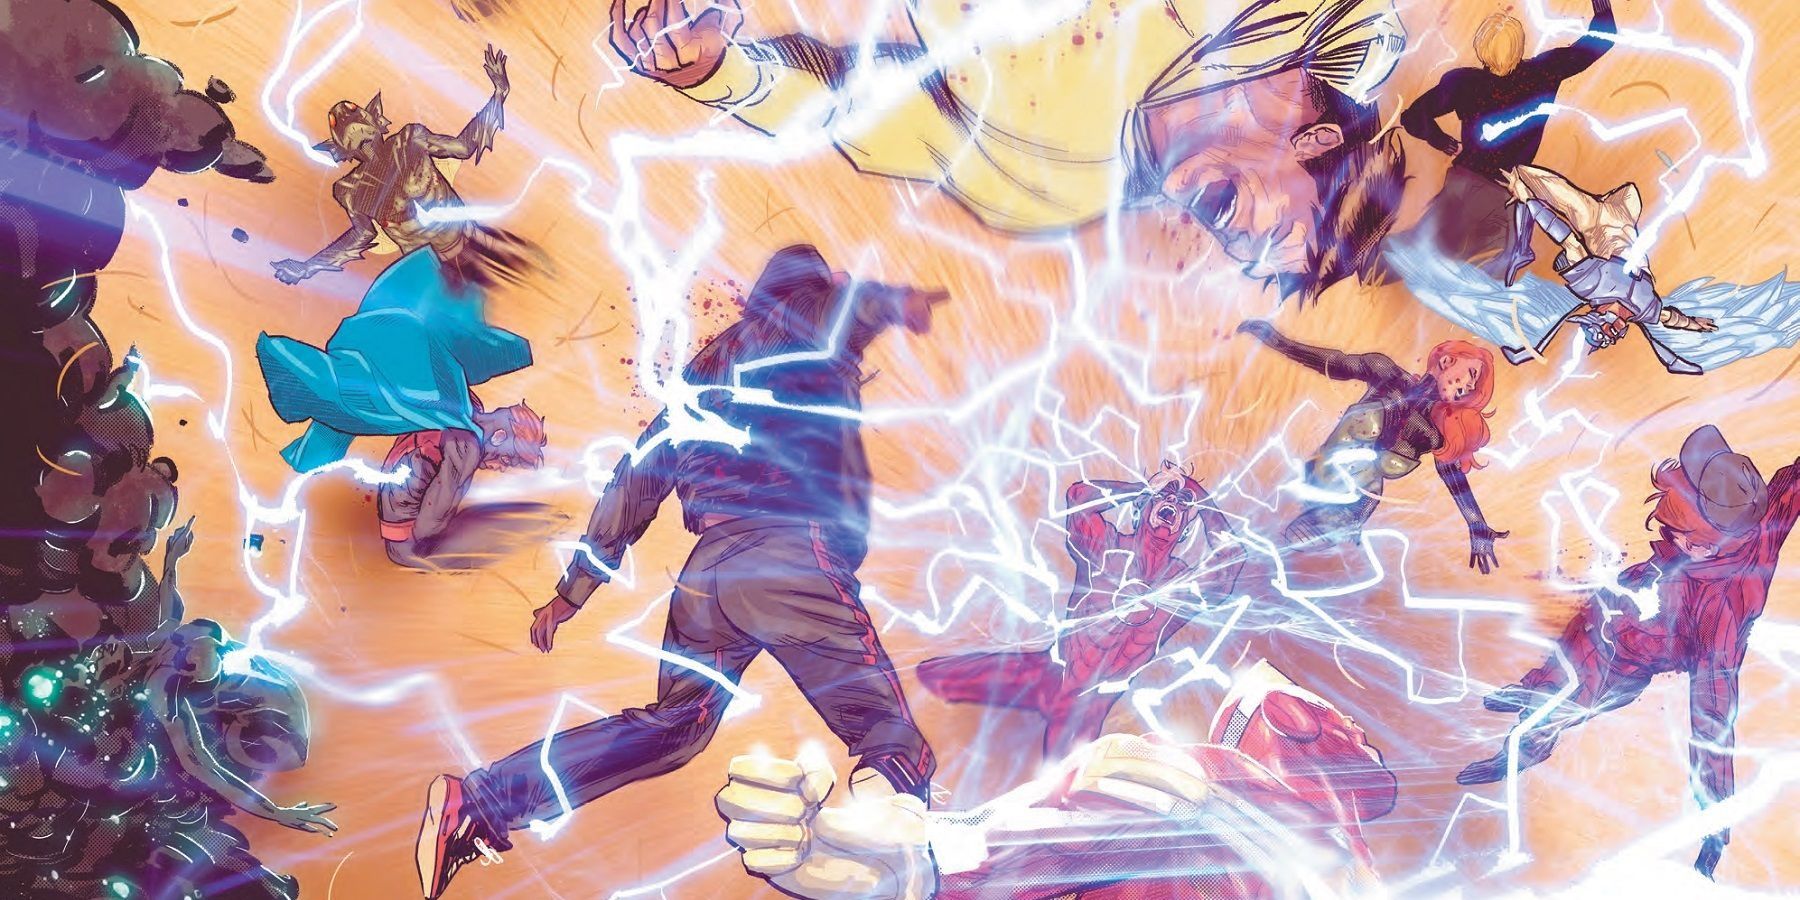 Wally West's Sanctuary massacre in DC Comics